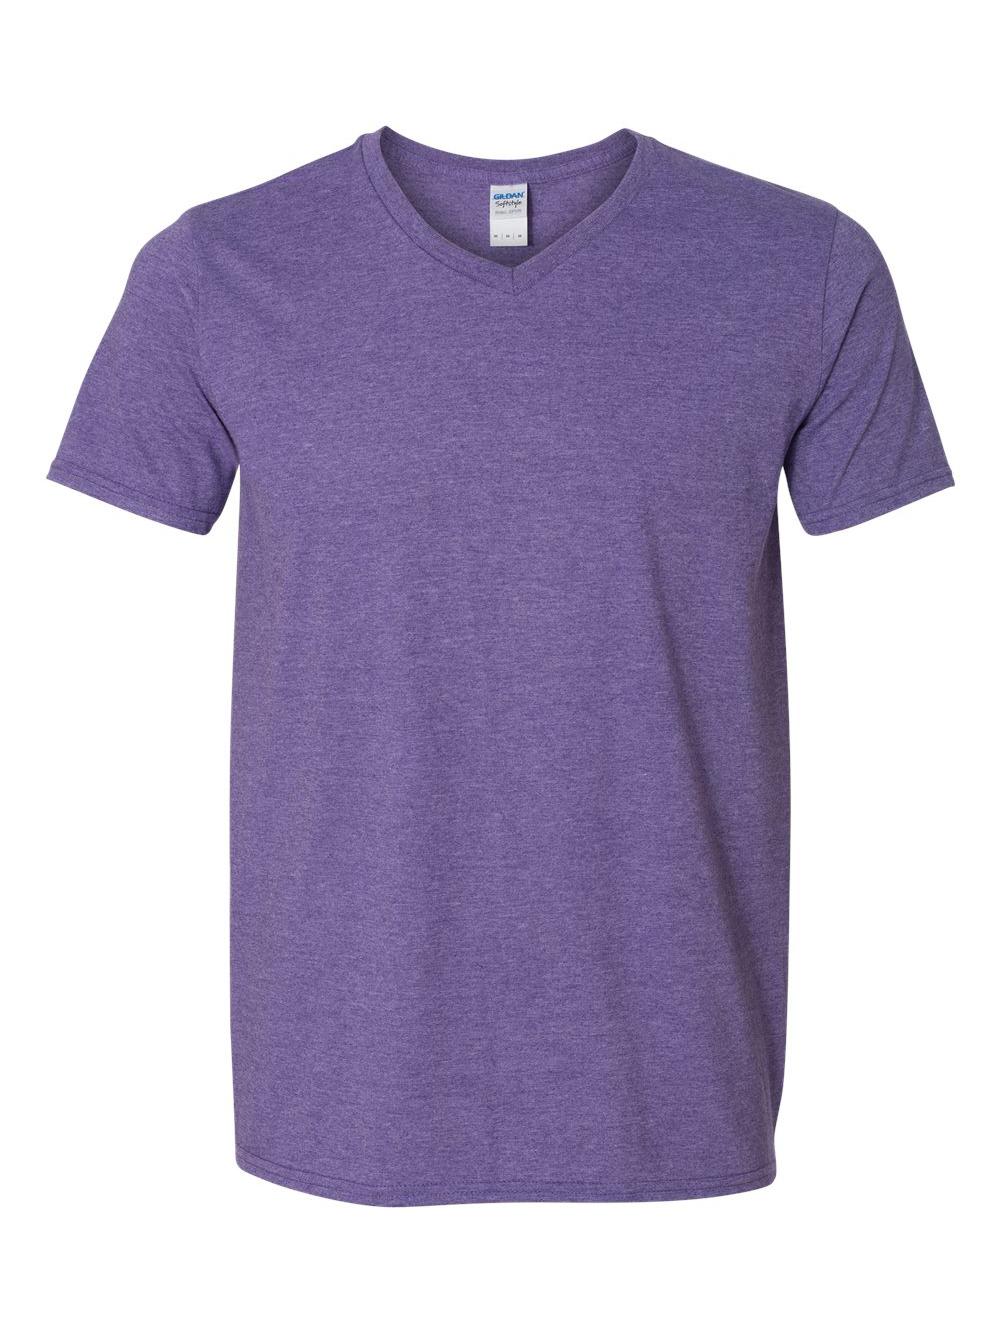 Gildan - Softstyle V-Neck T-Shirt - 64V00 - Heather Purple - Size: L ...